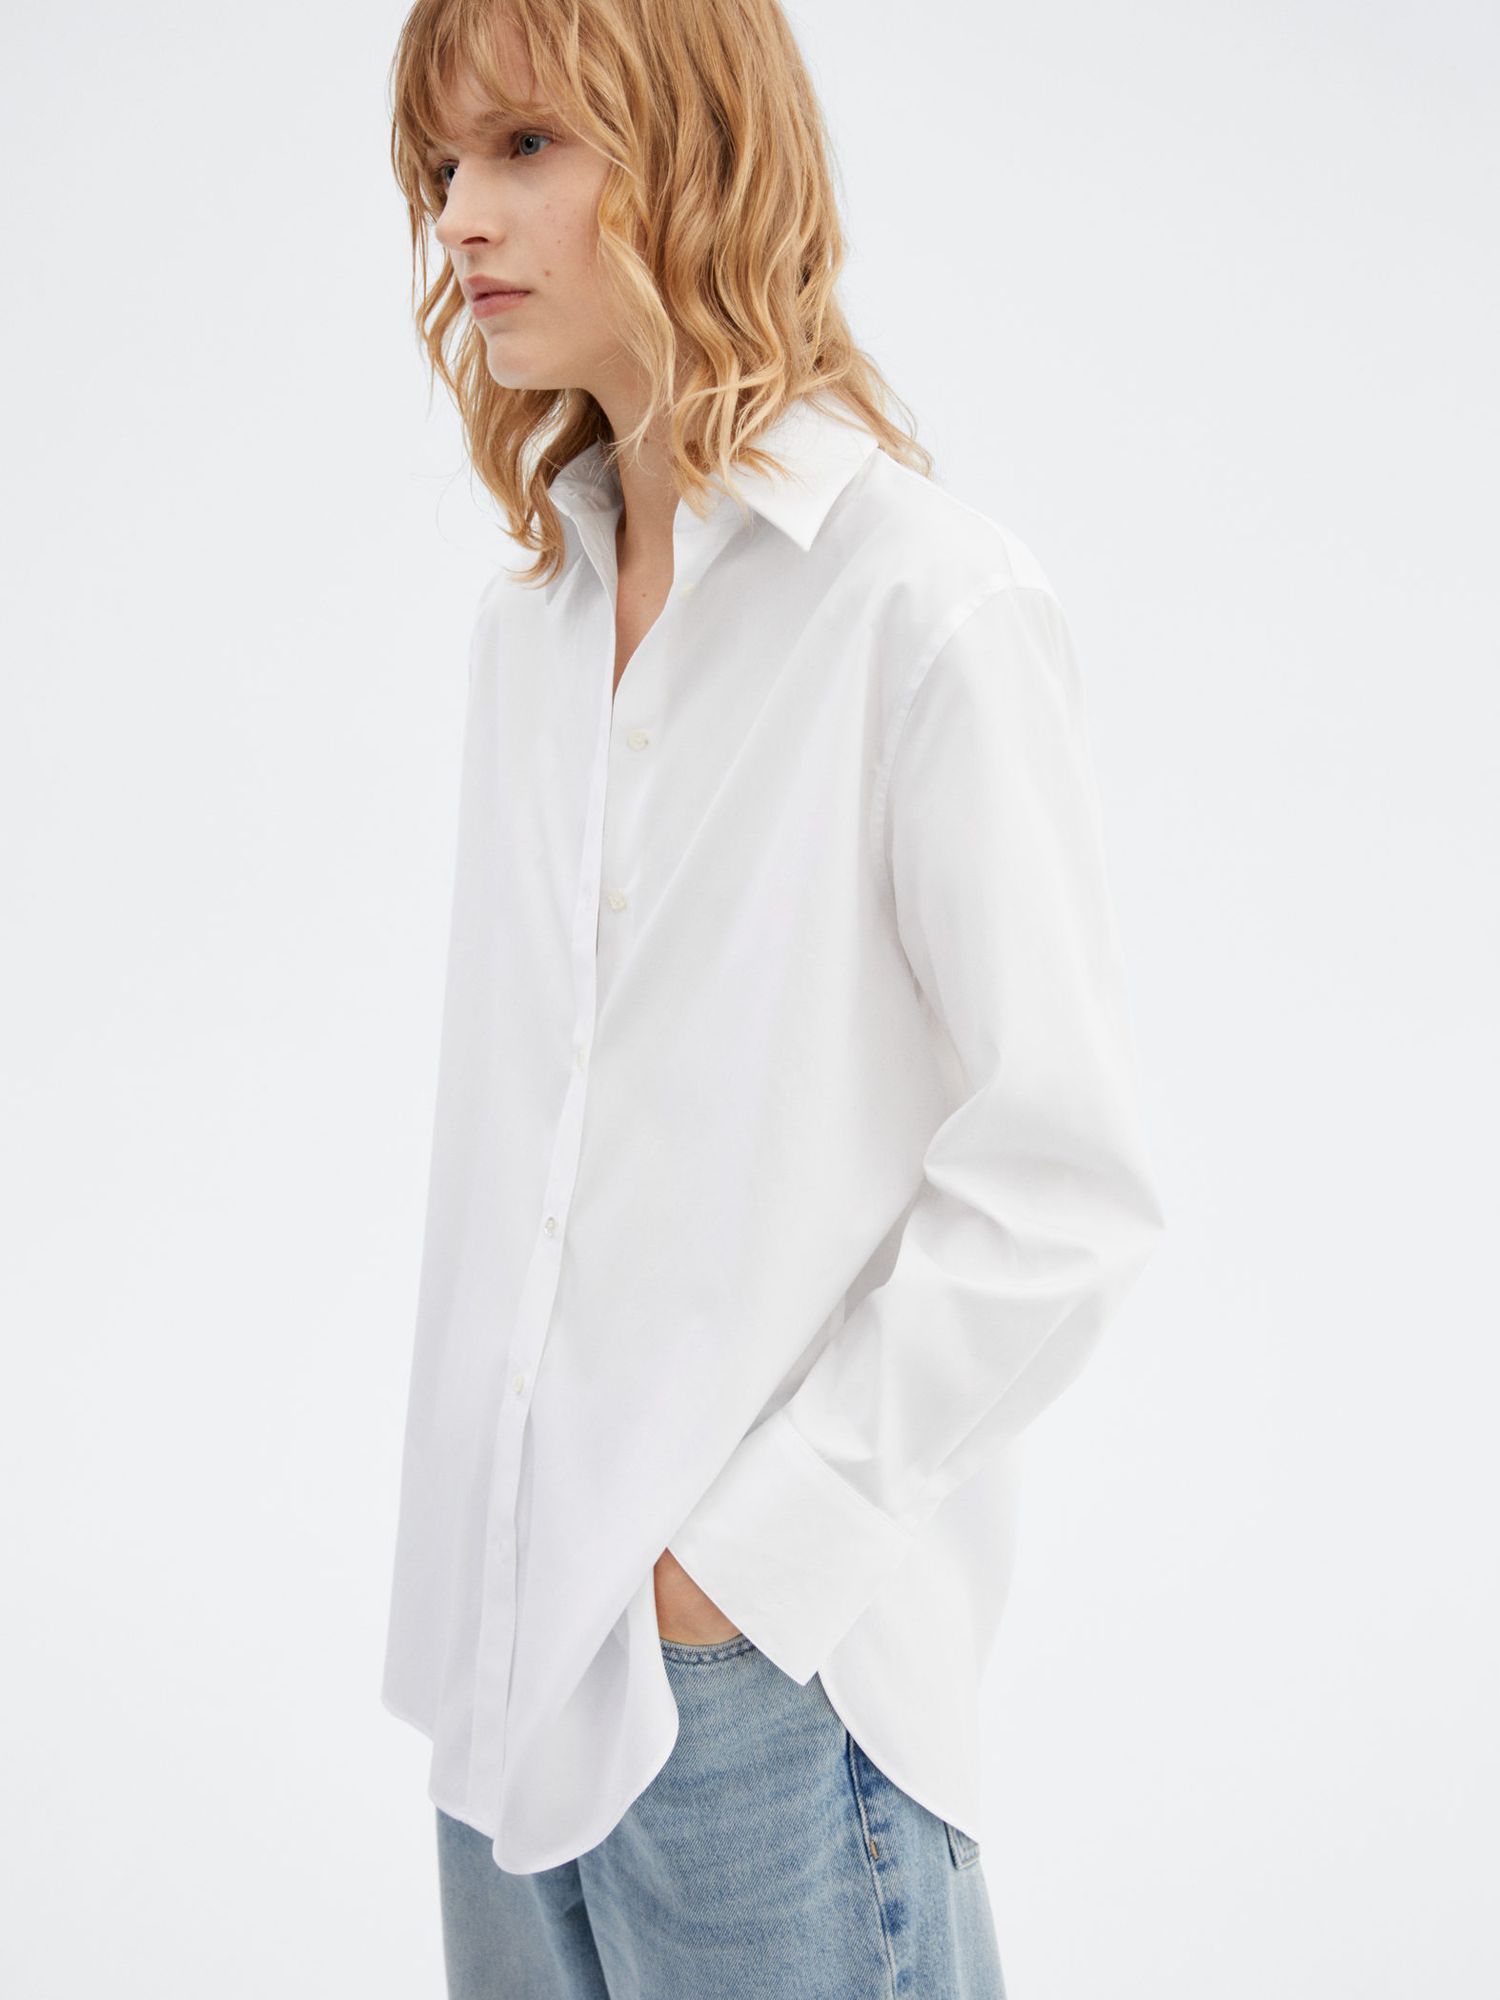 Mango Just Cotton Long Shirt, White at John Lewis & Partners